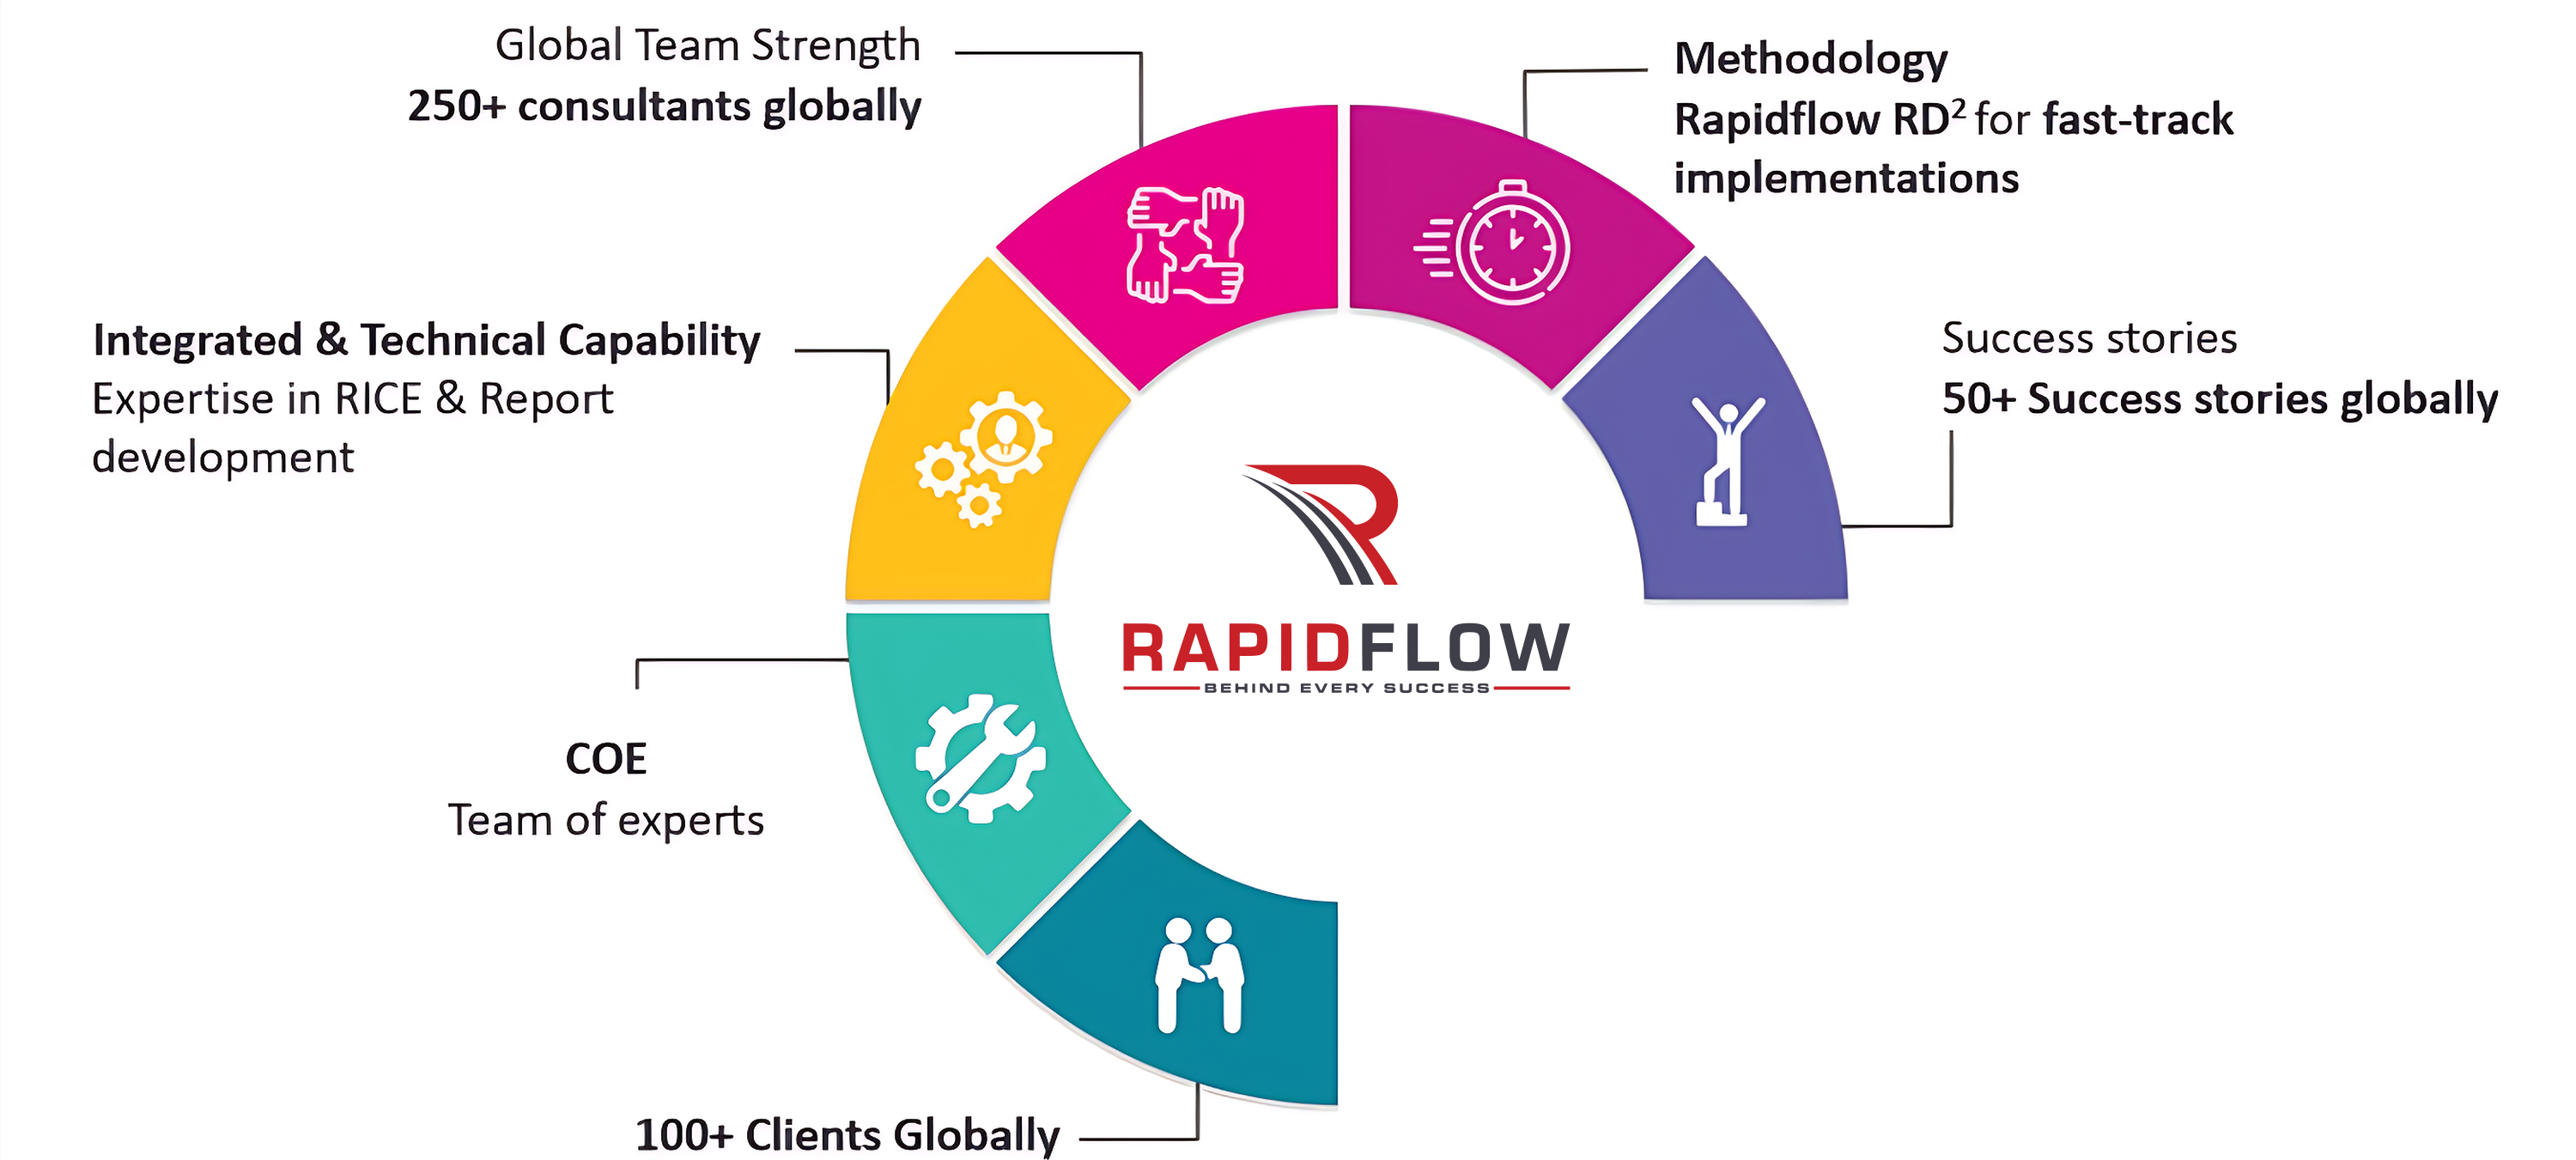 About Rapidflow